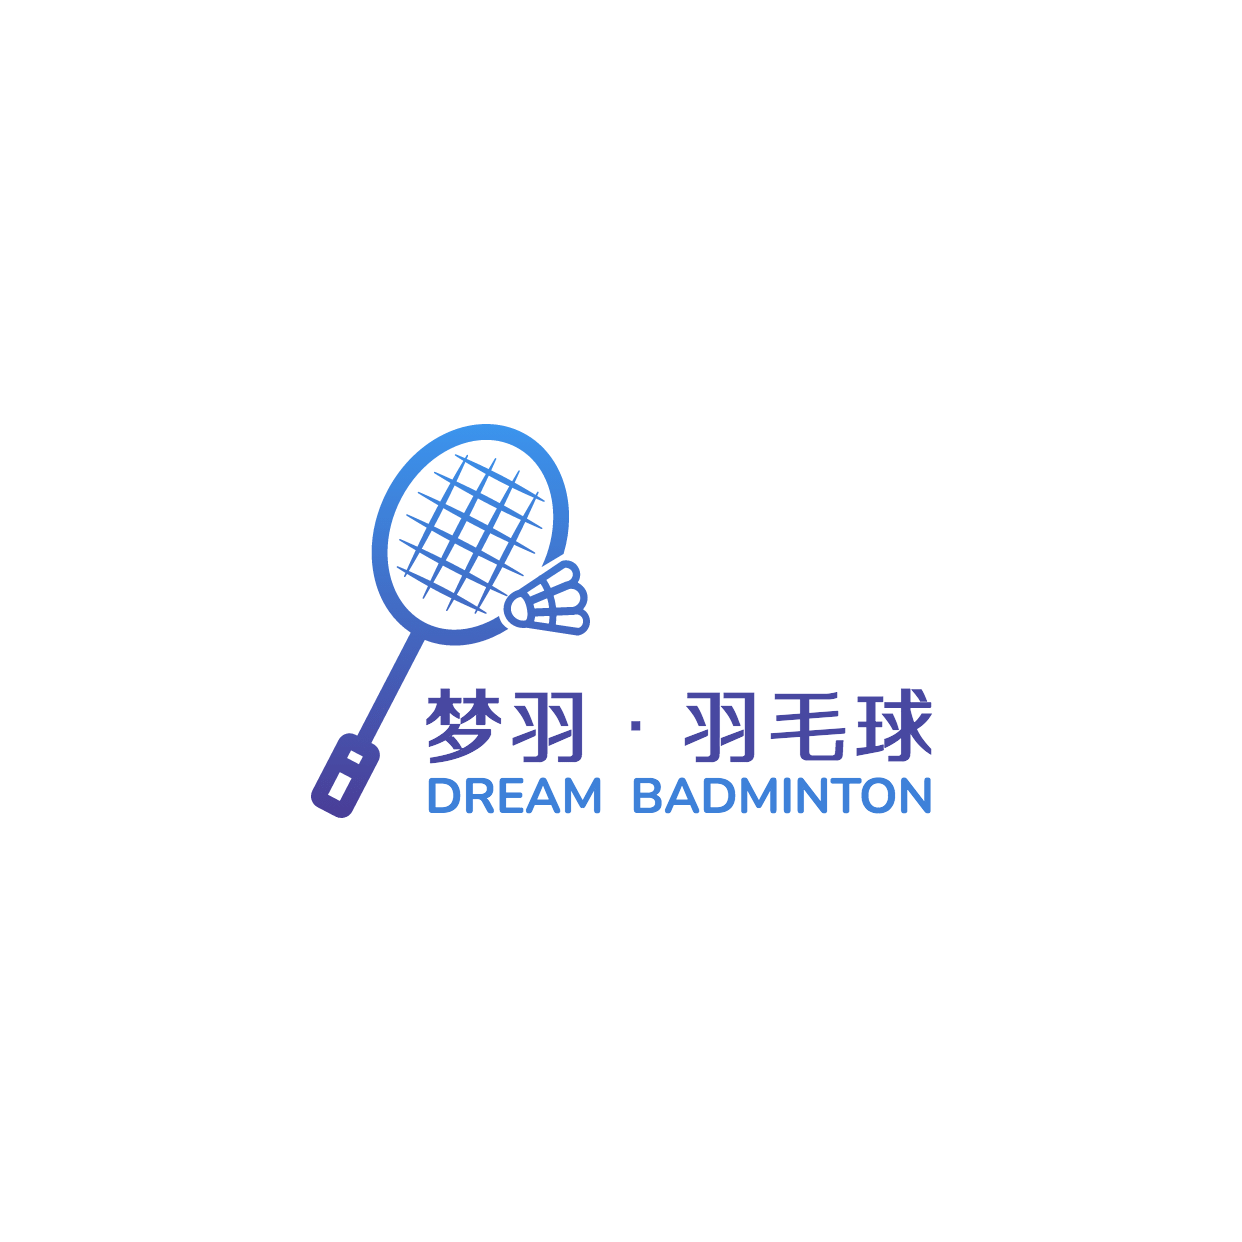 素质教育羽毛球培训头像logo预览效果